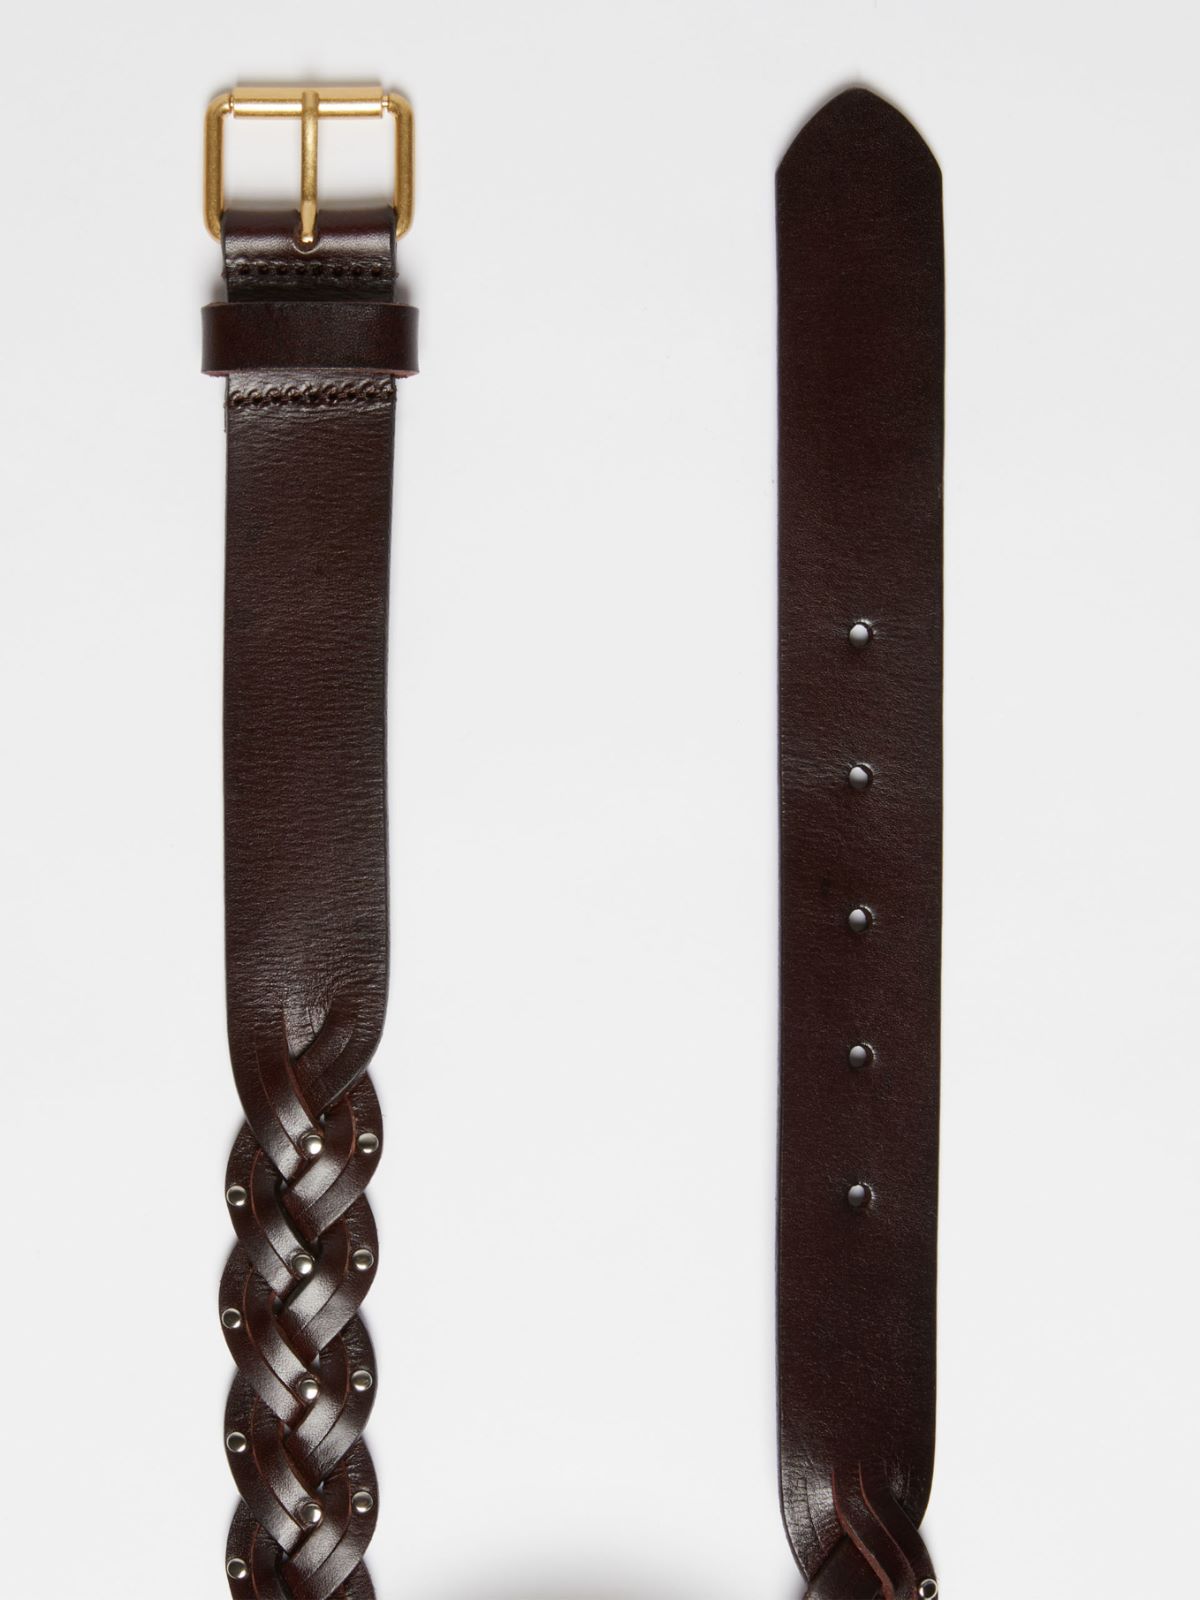 Plaited leather belt - DARK BROWN - Weekend Max Mara - 2